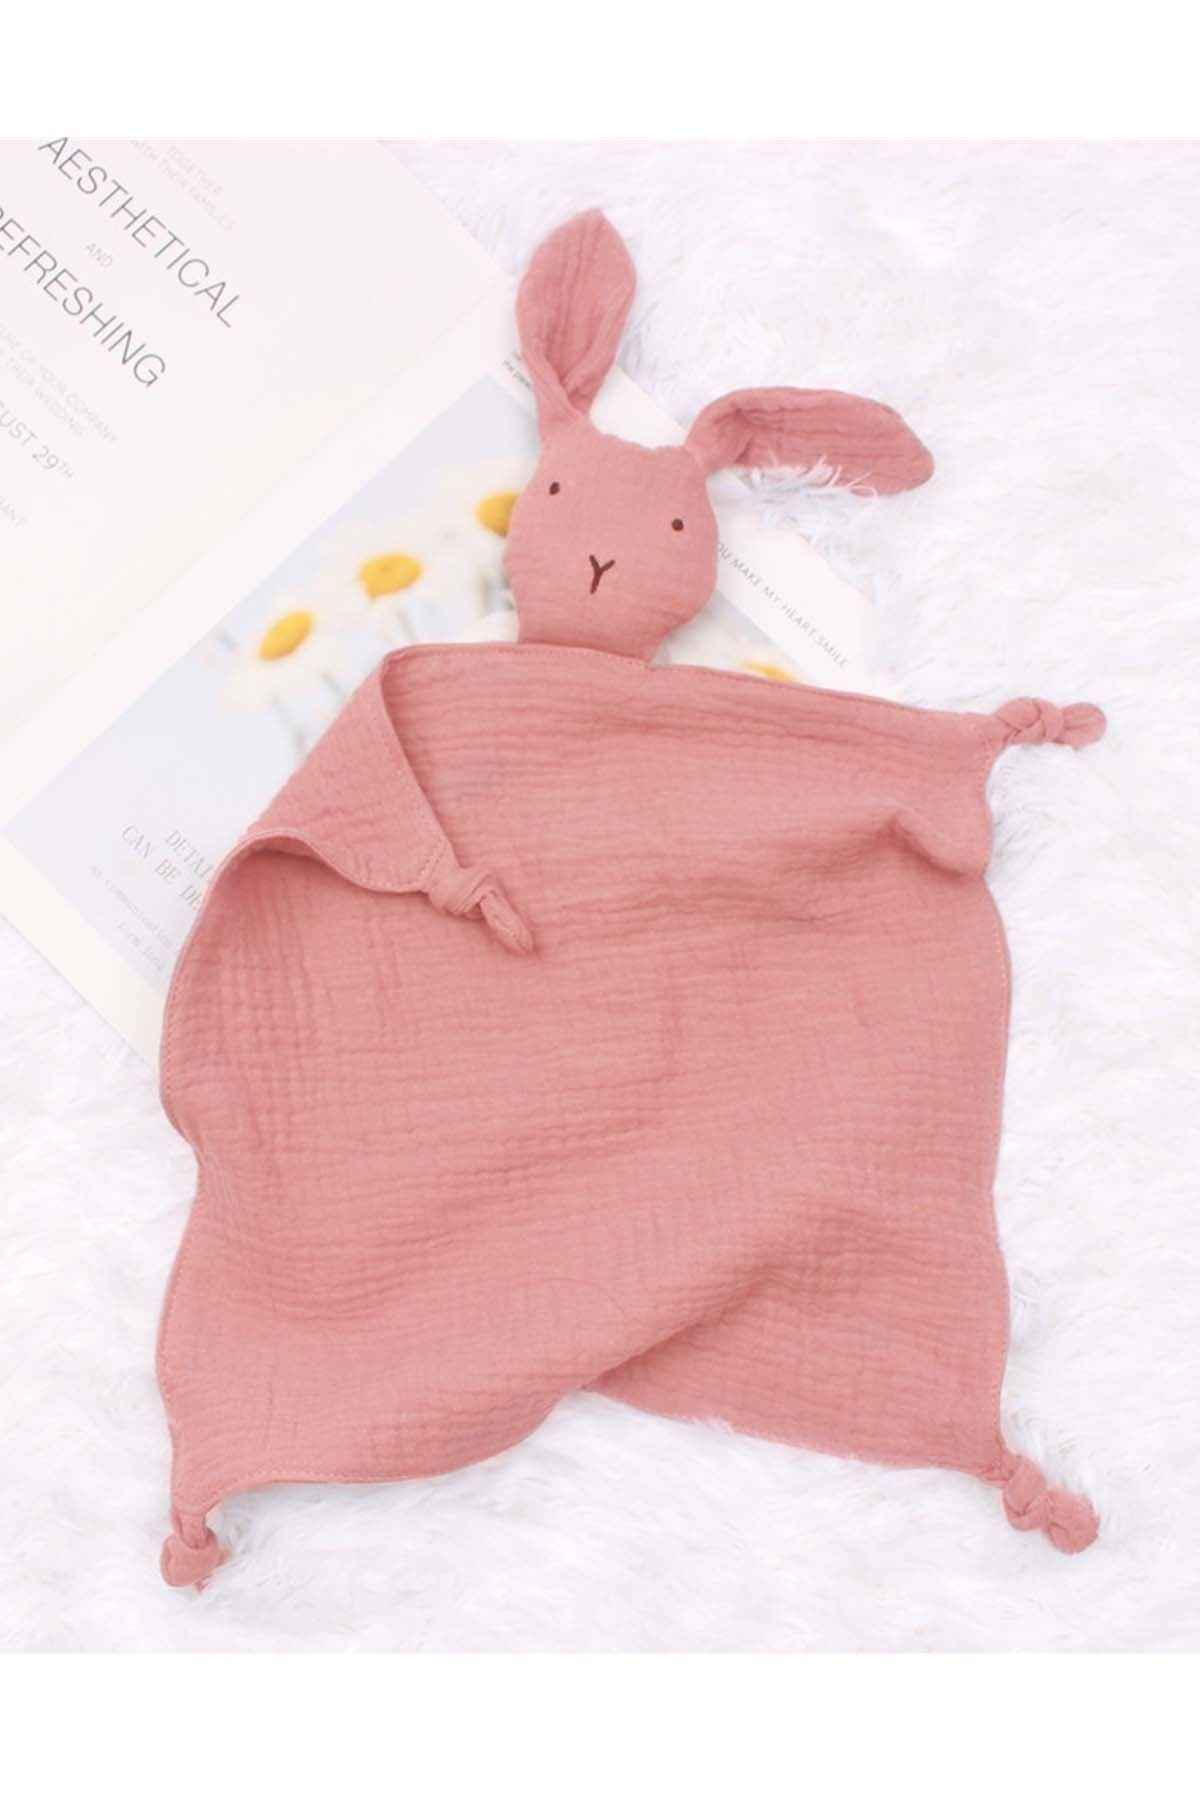 Modakids Unisex Bebekler 4 Katlı Müslin Uyku Arkadaşı Kız Erkek Bebek Sevimli Tavşan Modeli